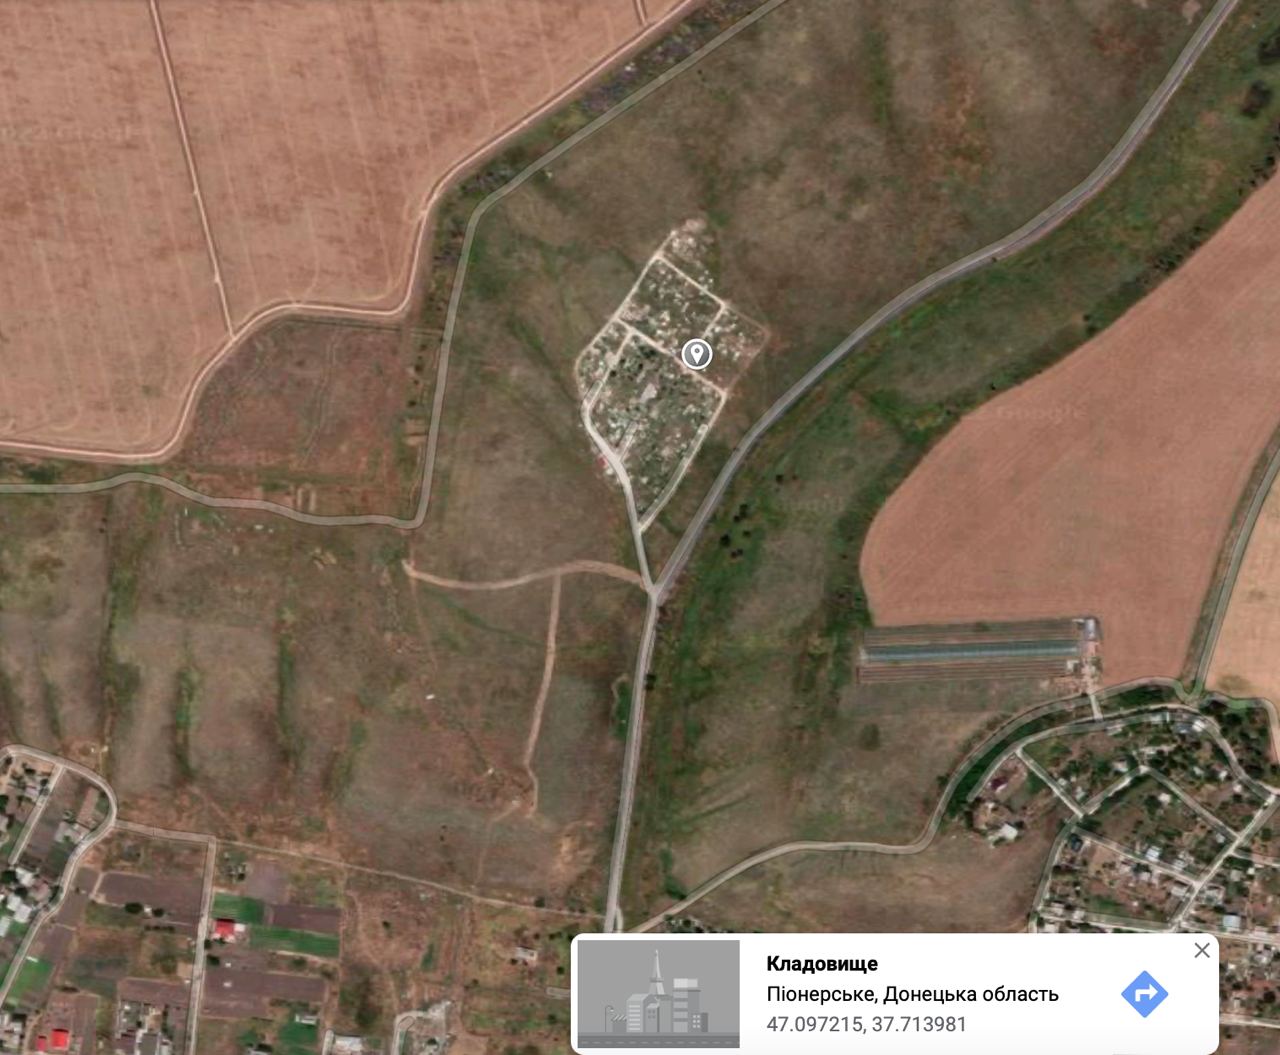 Орієнтовне місце влаштування масового поховання позначили на карті. Фото: Андрющенко Time